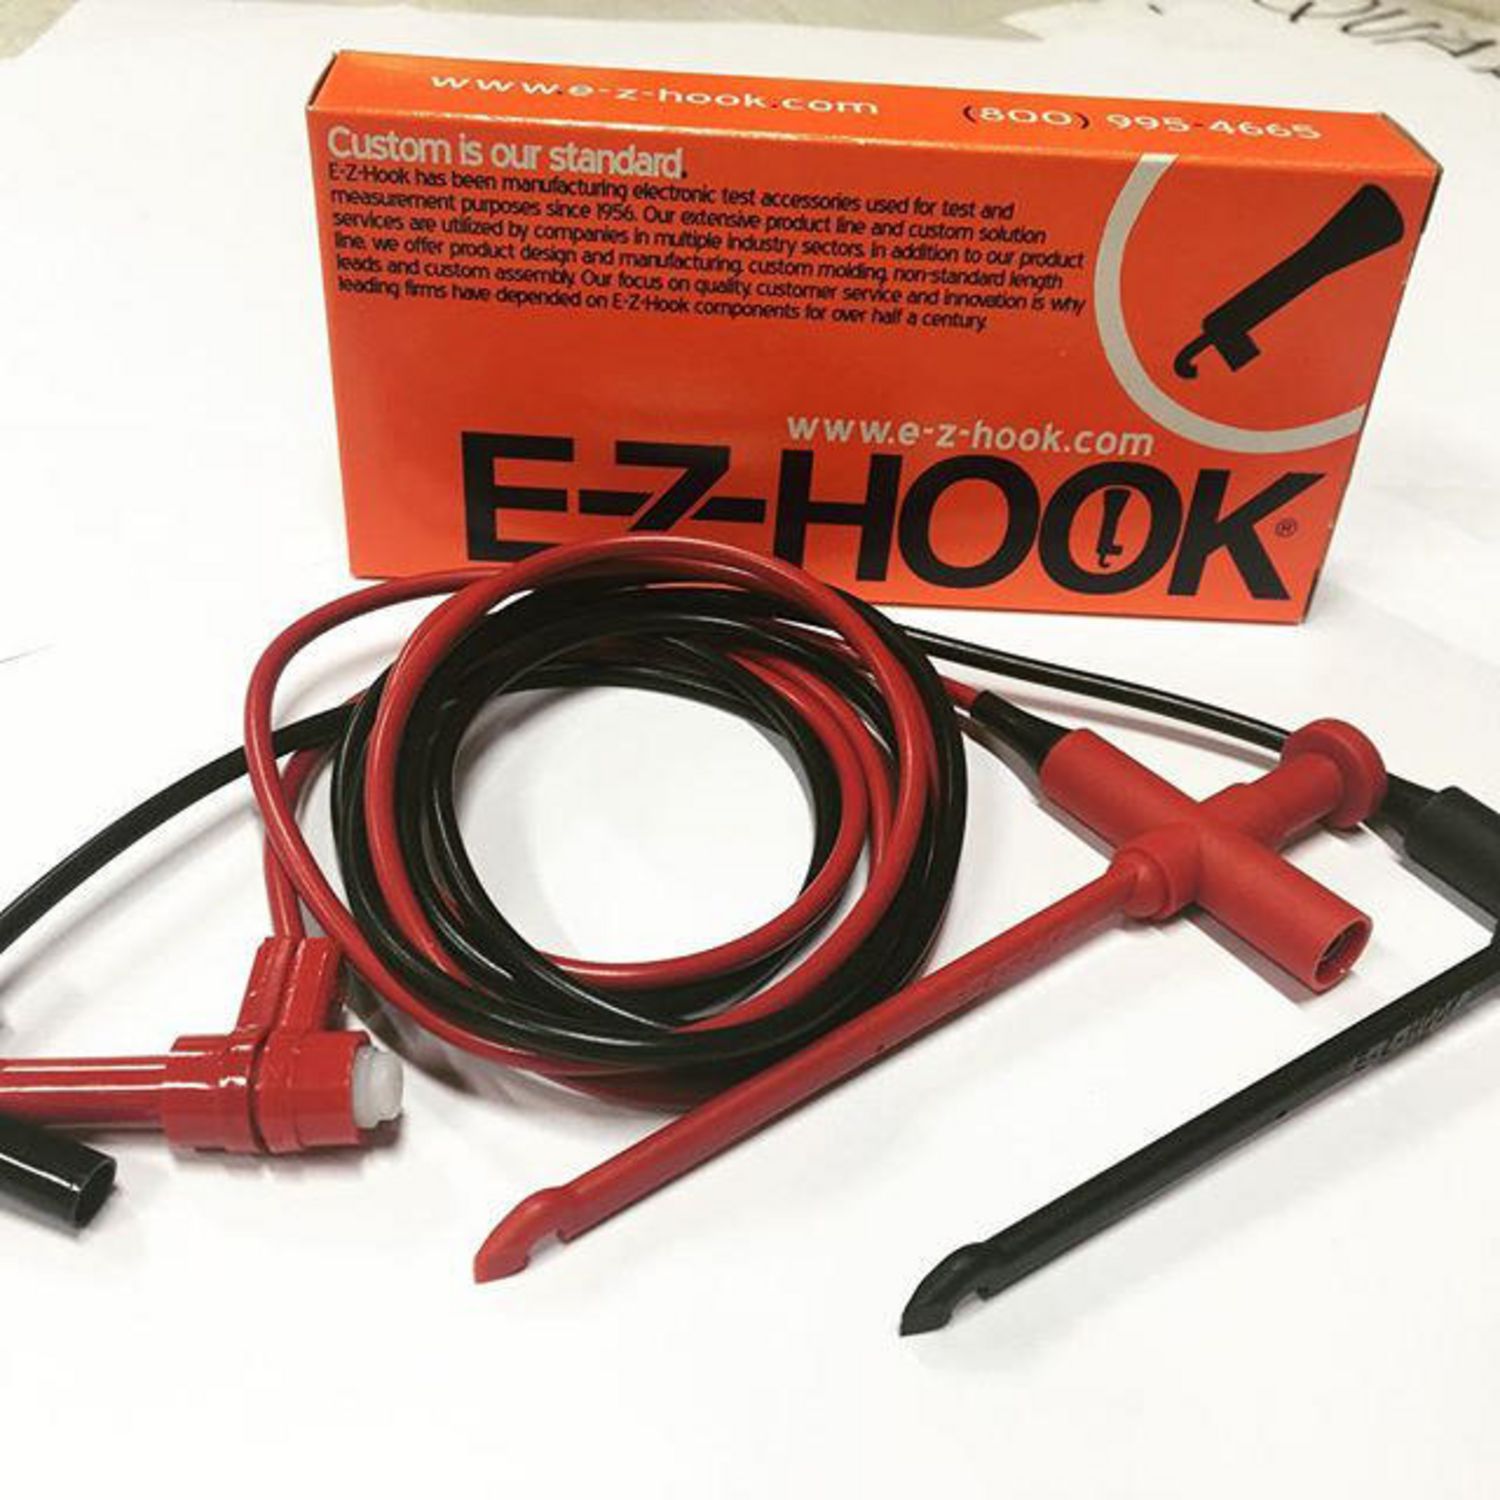 EZ-HOOK LEADS PIERCING CONNECTOR SET XL EZH3